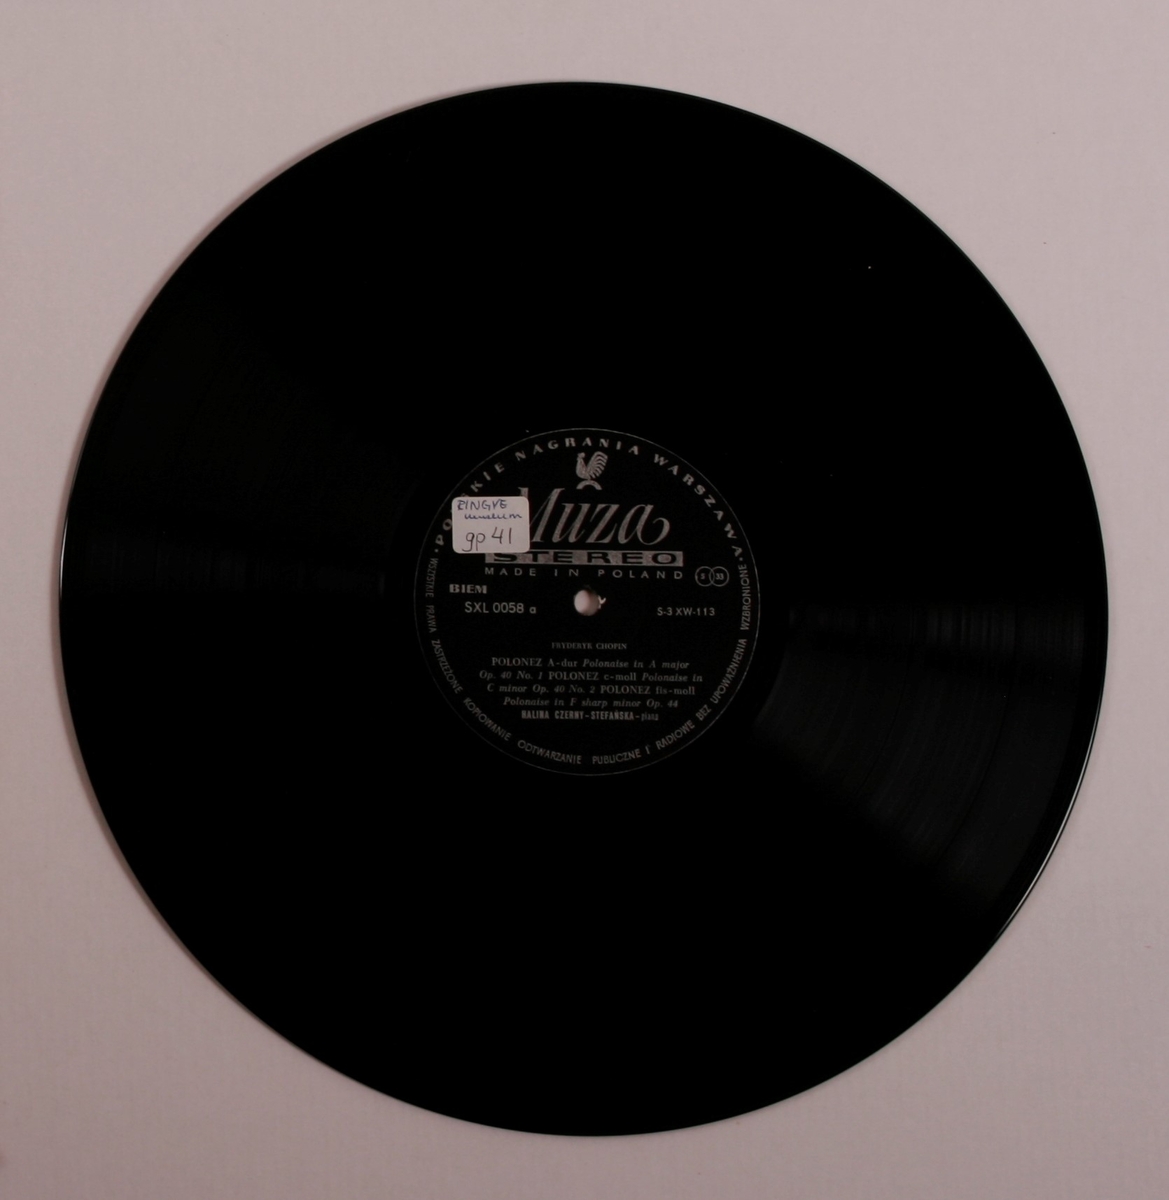 Grammofonplate i svart vinyl og plateomslag i papp. Plata ligger i en plastlomme.
